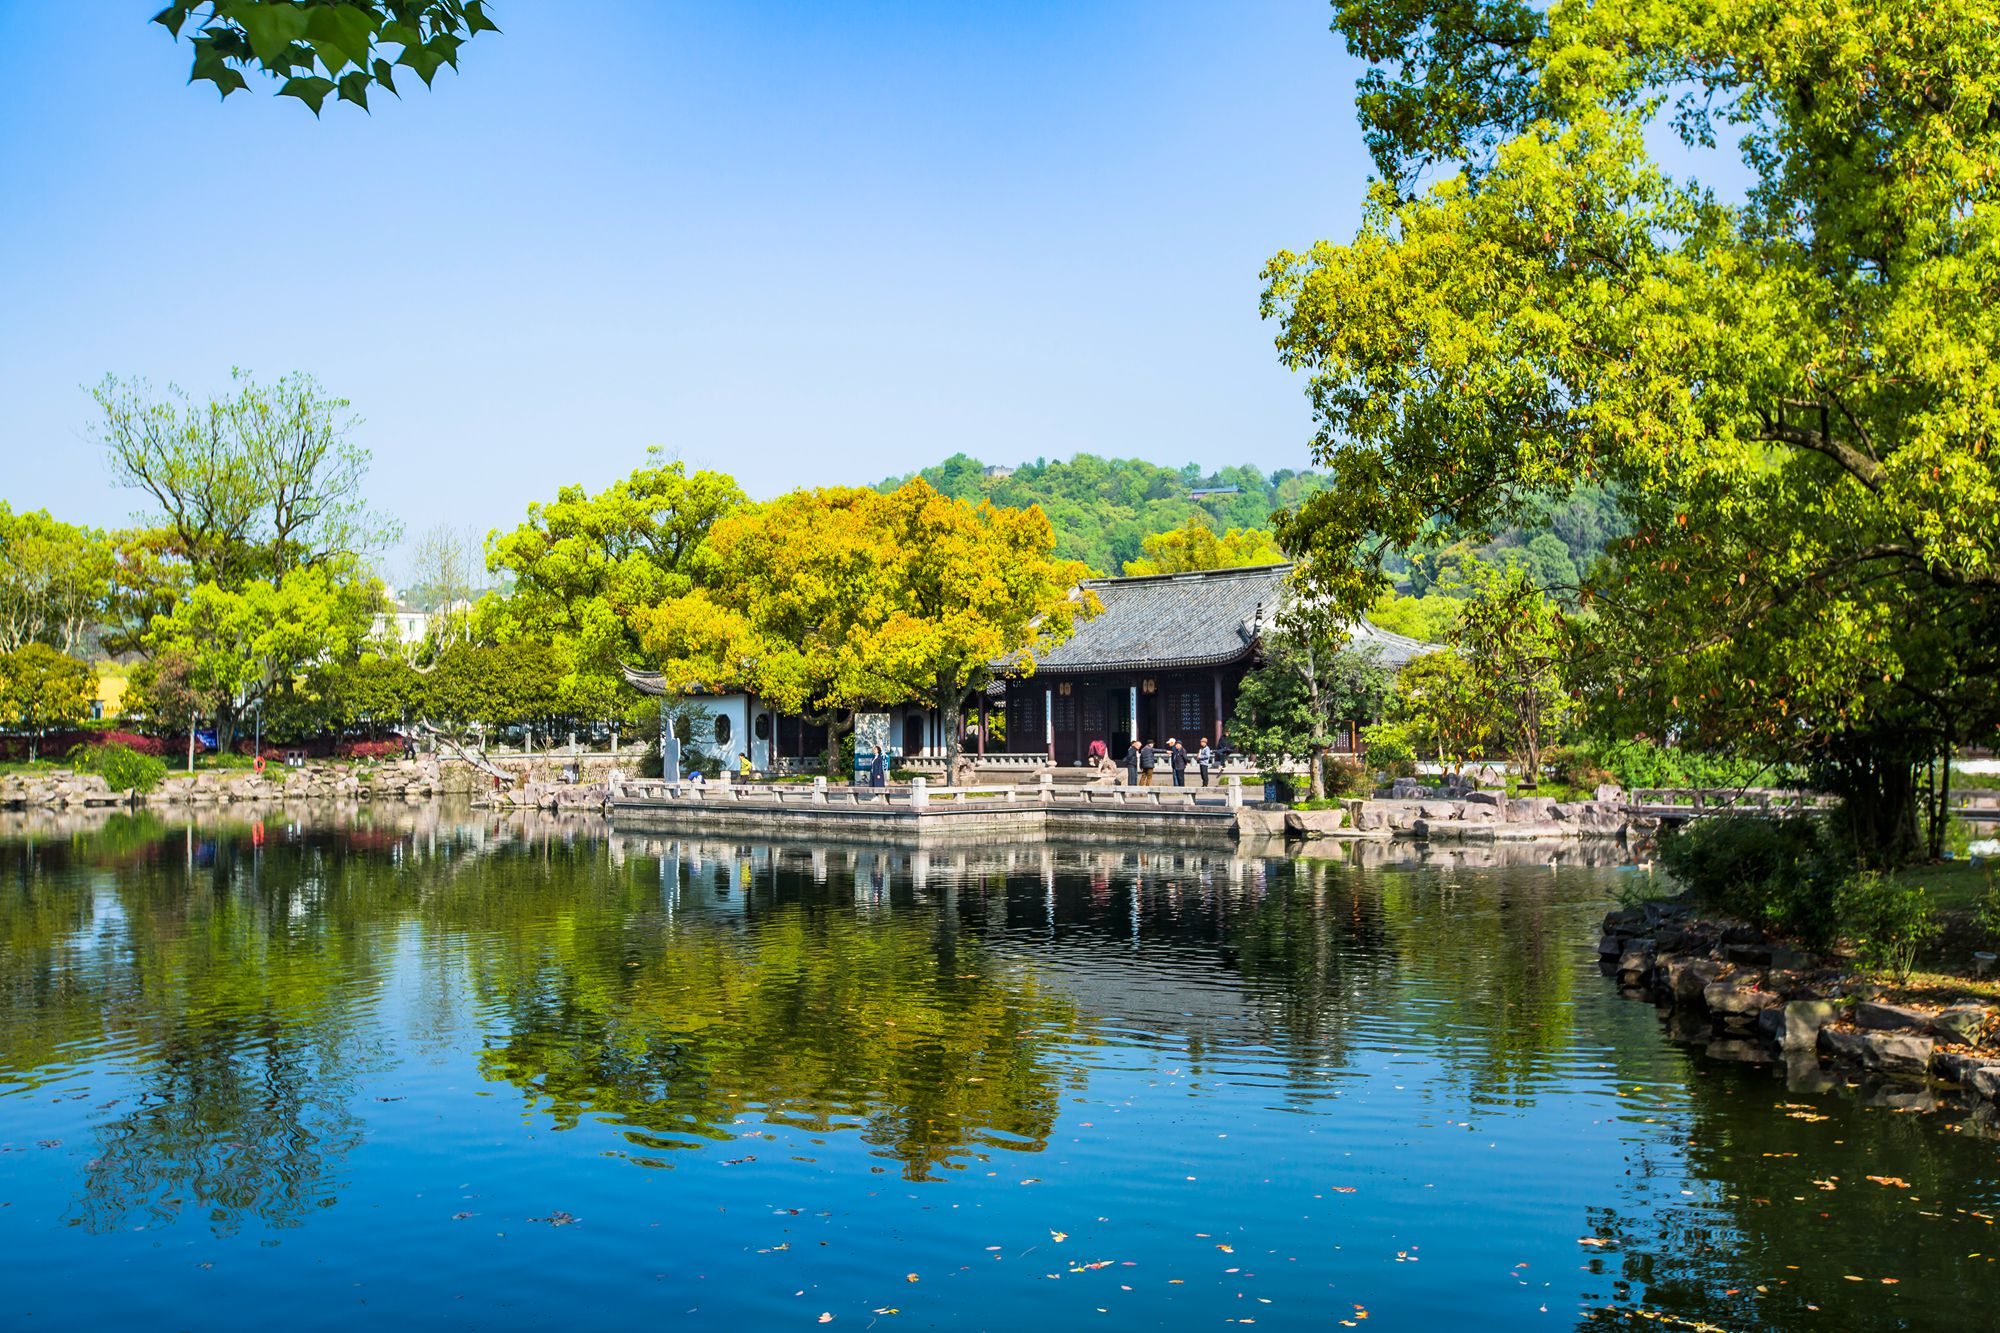 想要打卡央视跨年晚会必去的充满江南风情的浙江临海东湖公园? 